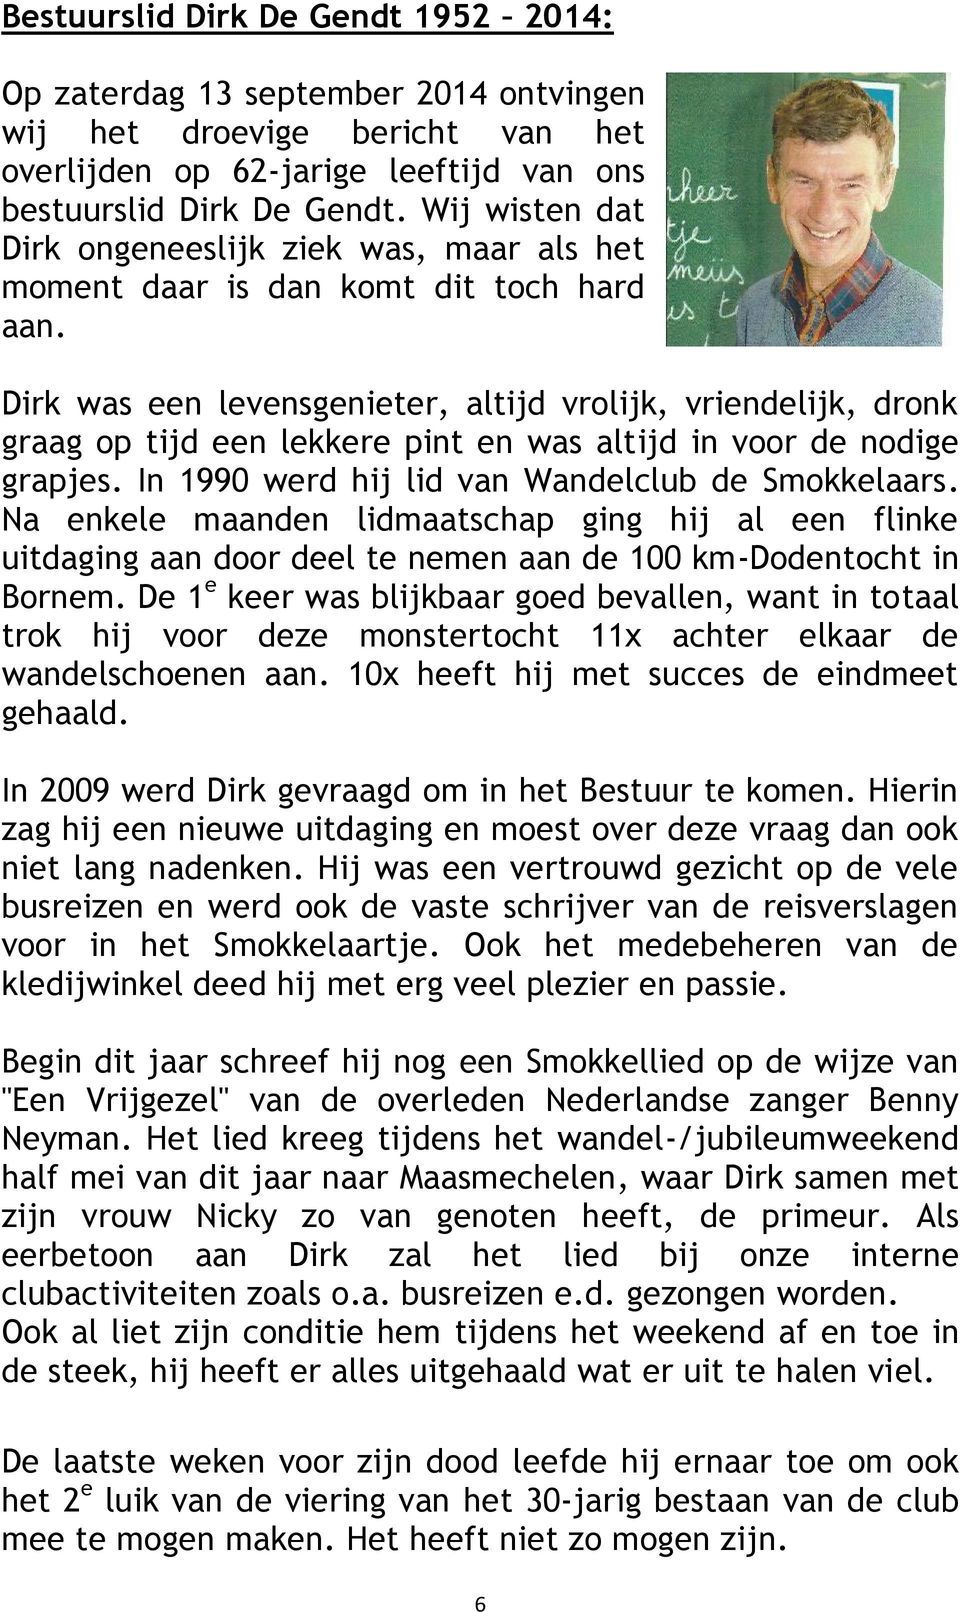 Dirk was een levensgenieter, altijd vrolijk, vriendelijk, dronk graag op tijd een lekkere pint en was altijd in voor de nodige grapjes. In 1990 werd hij lid van Wandelclub de Smokkelaars.